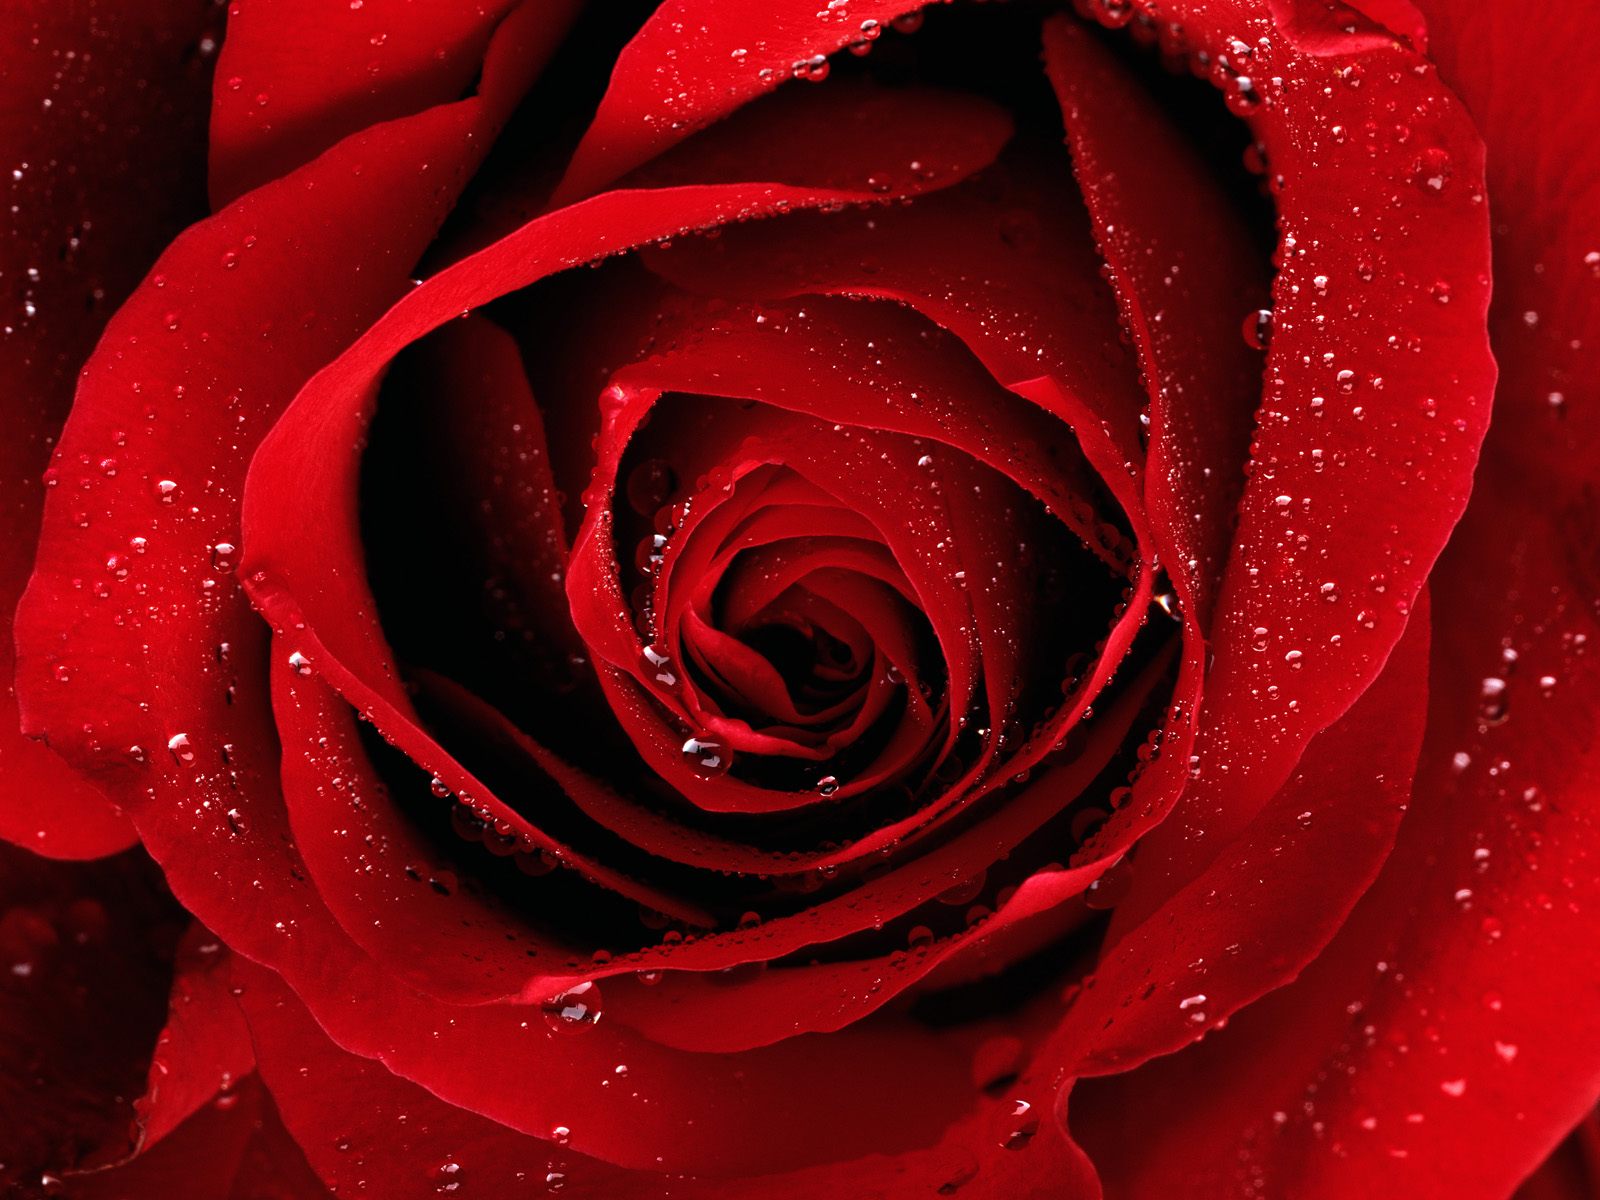 http://2.bp.blogspot.com/-w5izaUCvKmU/TTSth_oeyGI/AAAAAAAACqs/jnA3Az1d8GY/s1600/red-rose.jpg